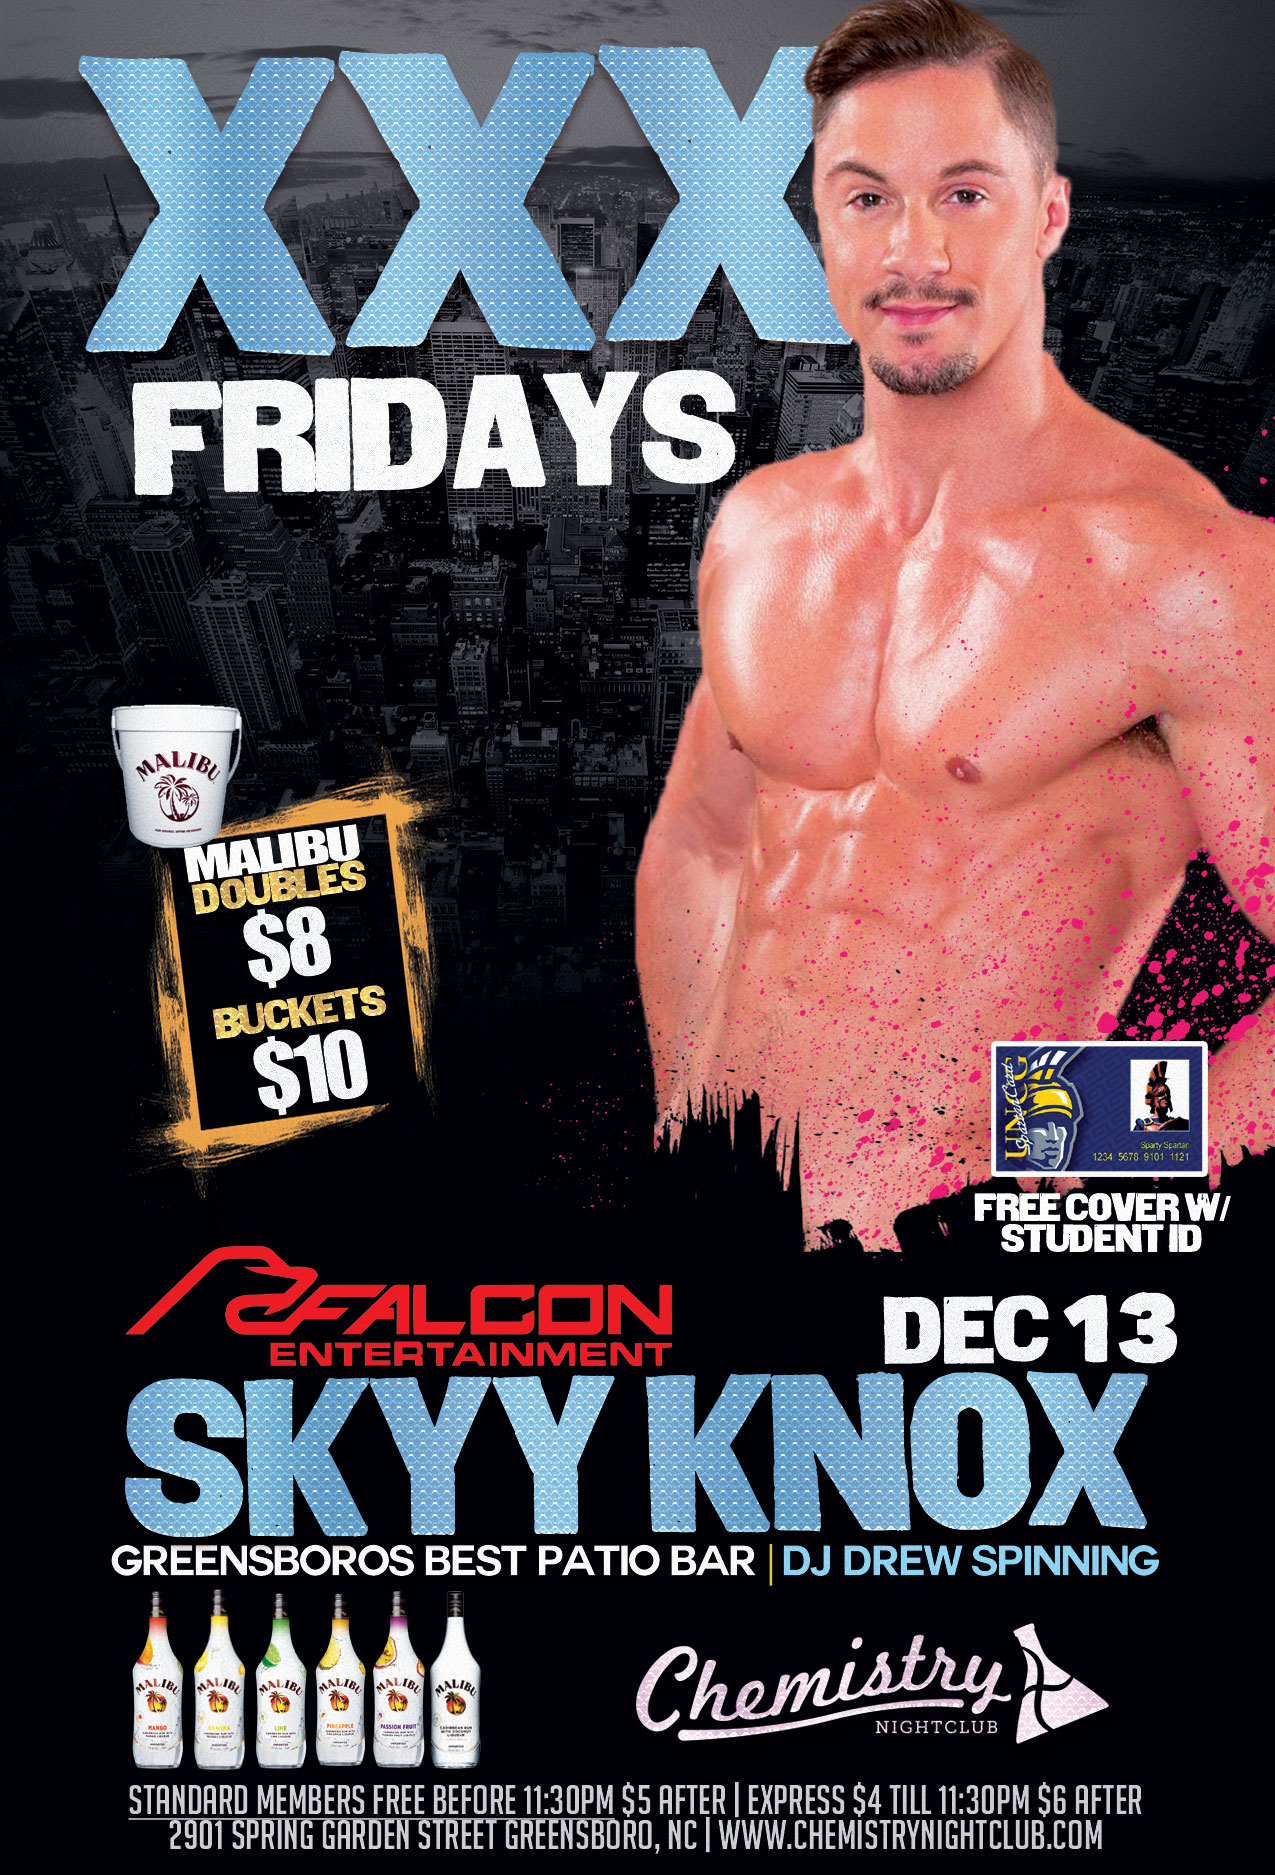 XXX Fridays Skyy Knoxx